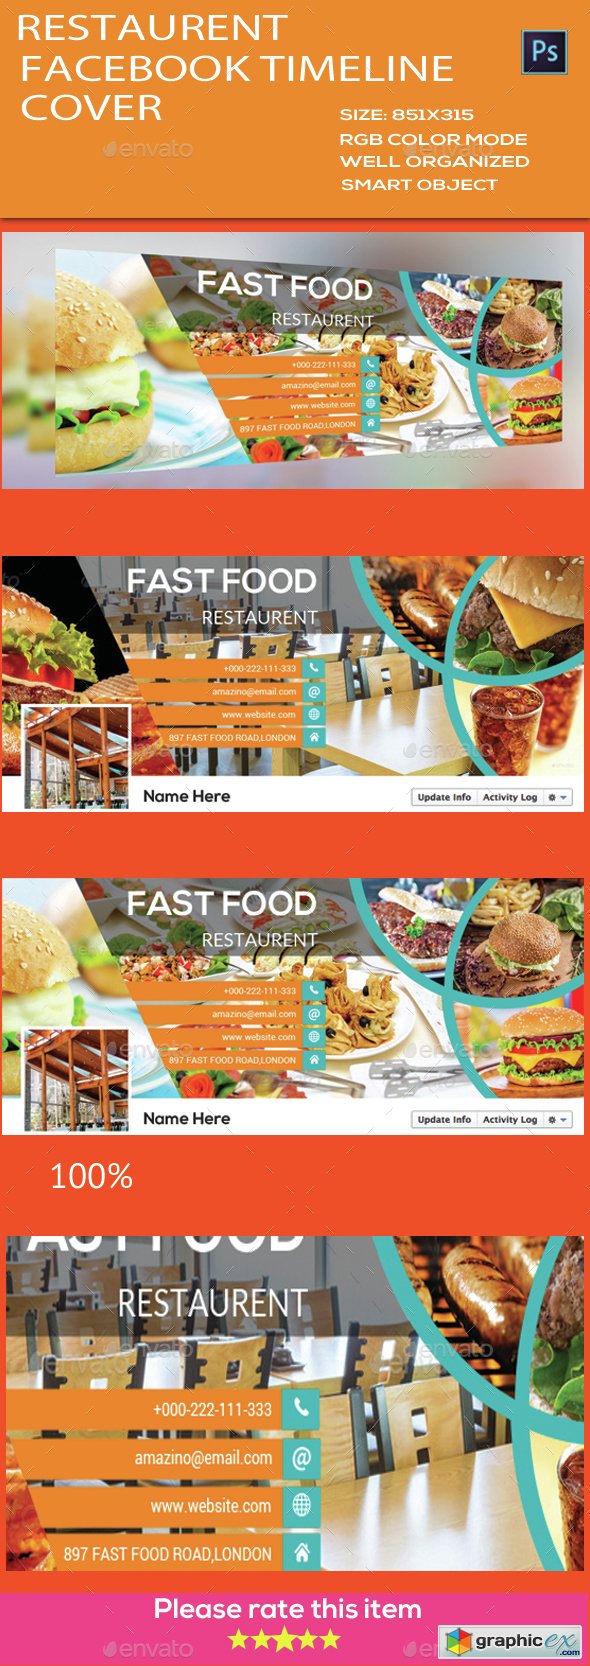 Restaurant Facebook Timeline Cover